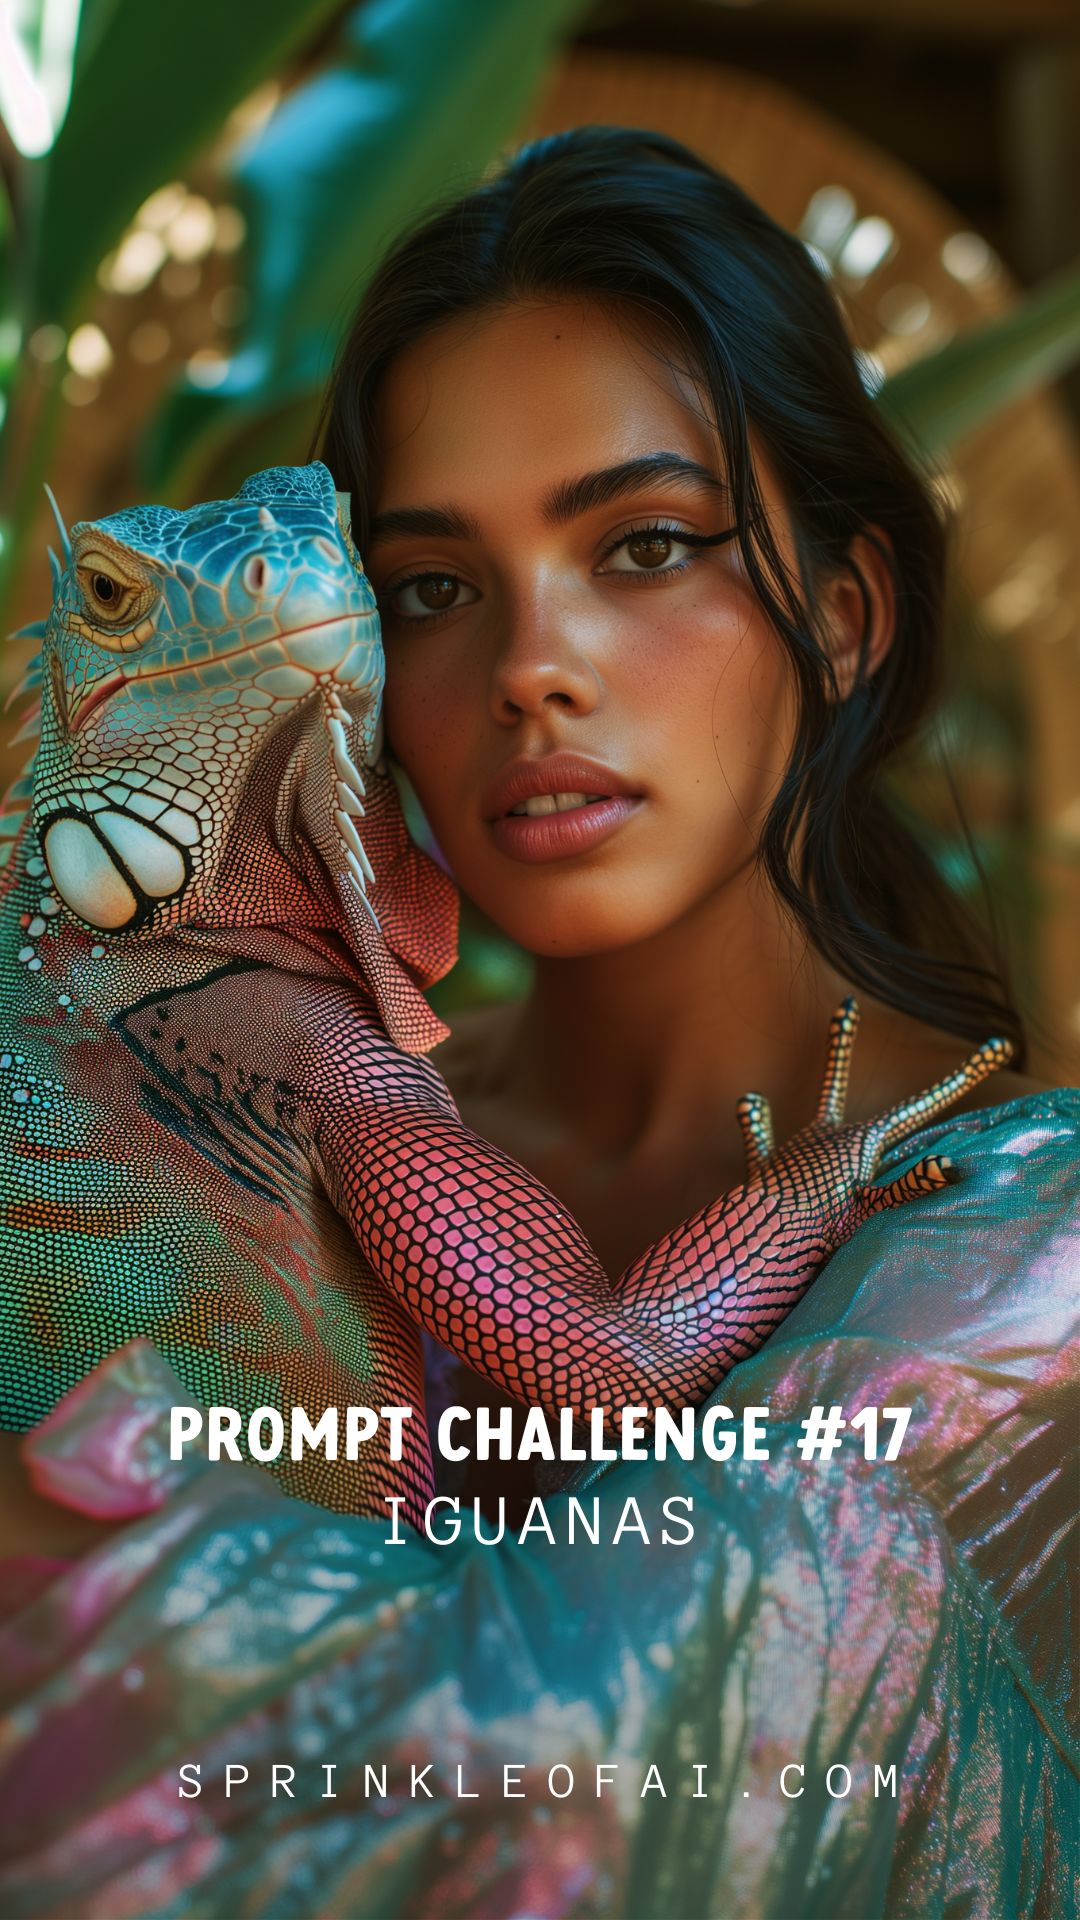 Sprinkle Prompt Challenge on Threads - Sprinkle of AI - Midjourney Prompt Iguanas